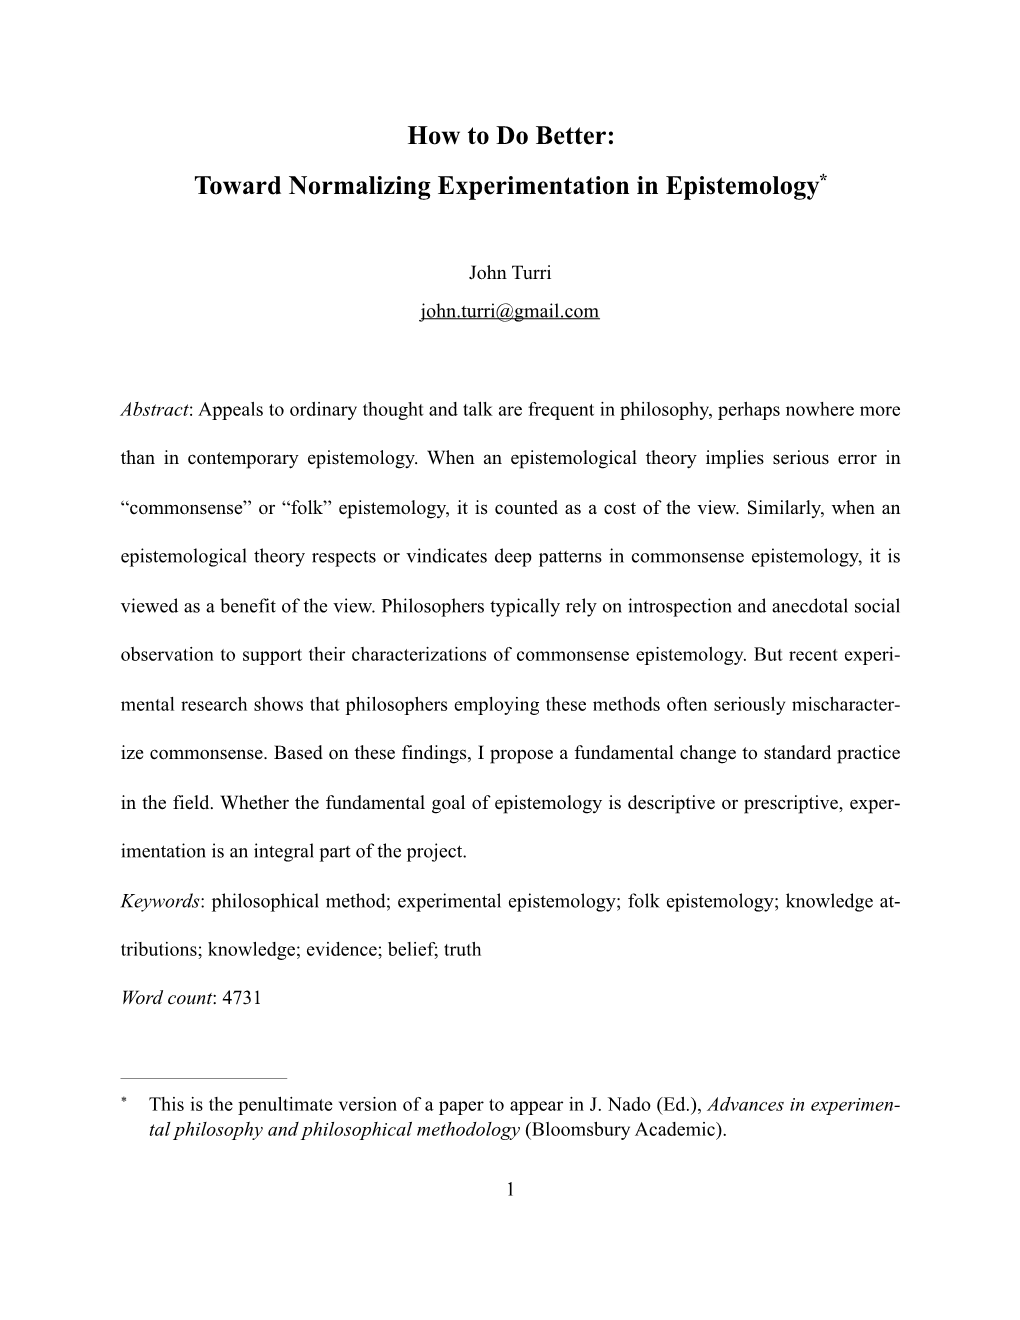 Toward Normalizing Experimentation in Epistemology*